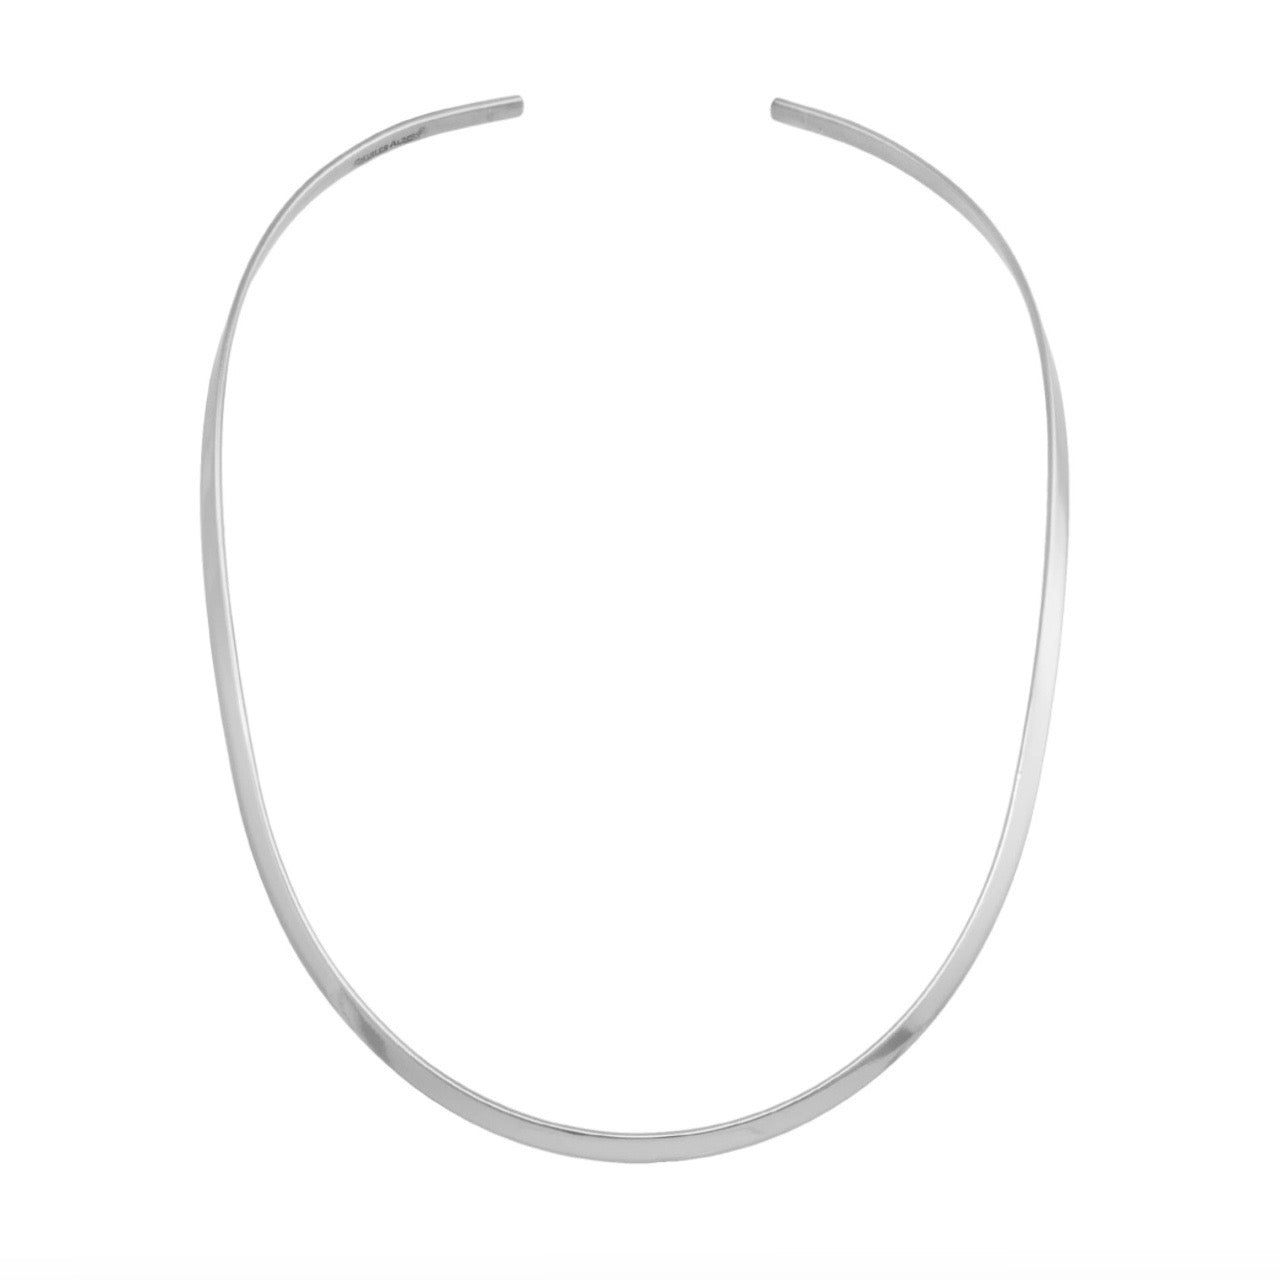 Silver tone neck wire for pendants